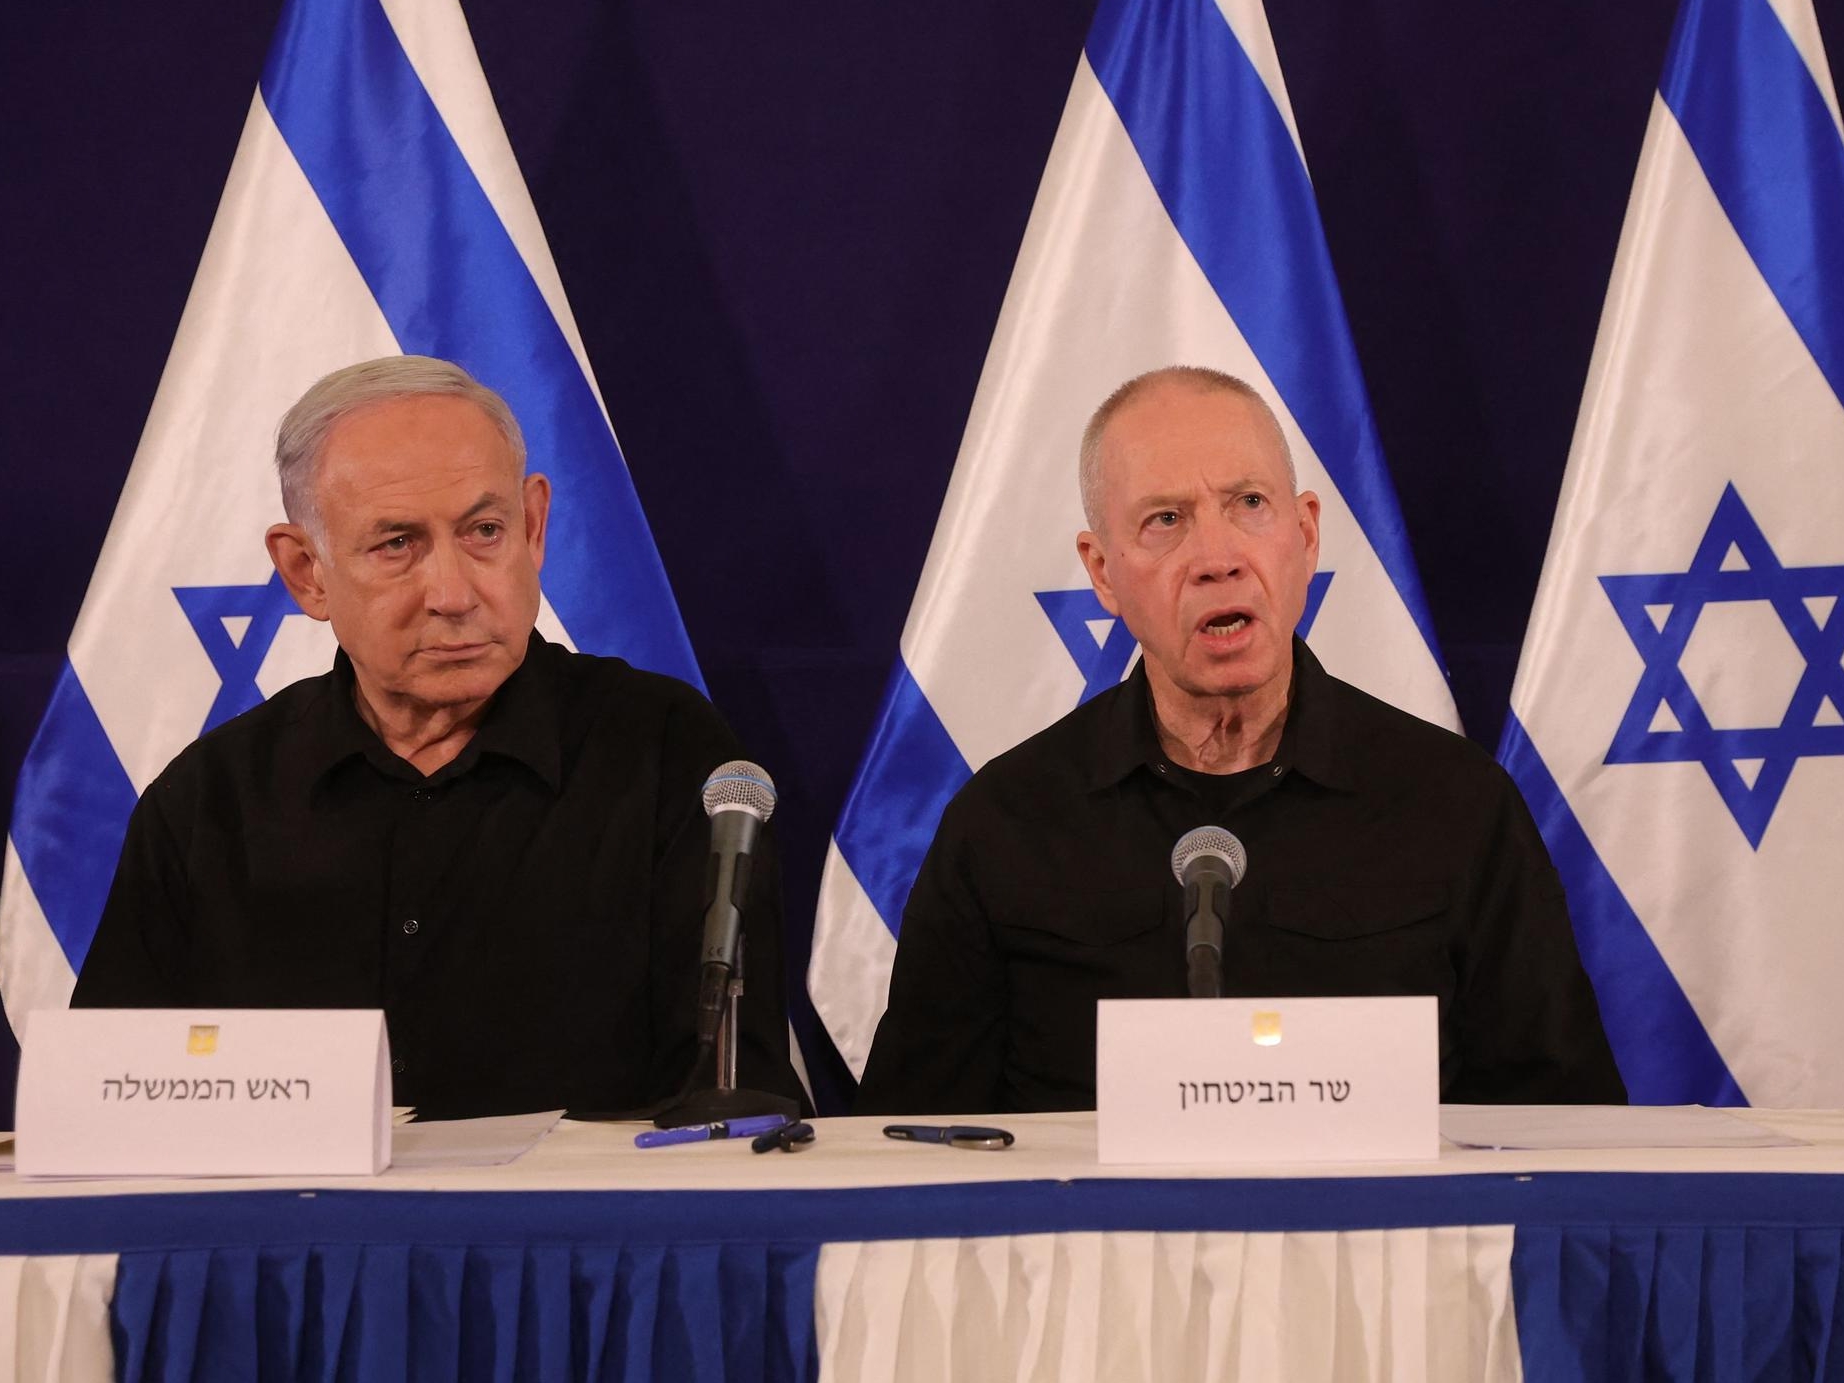 Le Premier ministre Benyamin Netanyahou (à gauche) et son ministre de la Défense Yoav Gallant (à droite) pourraient êtres visés par des mandats d'arrêt internationaux émis par la CIJ. AFP/Abir Sultan